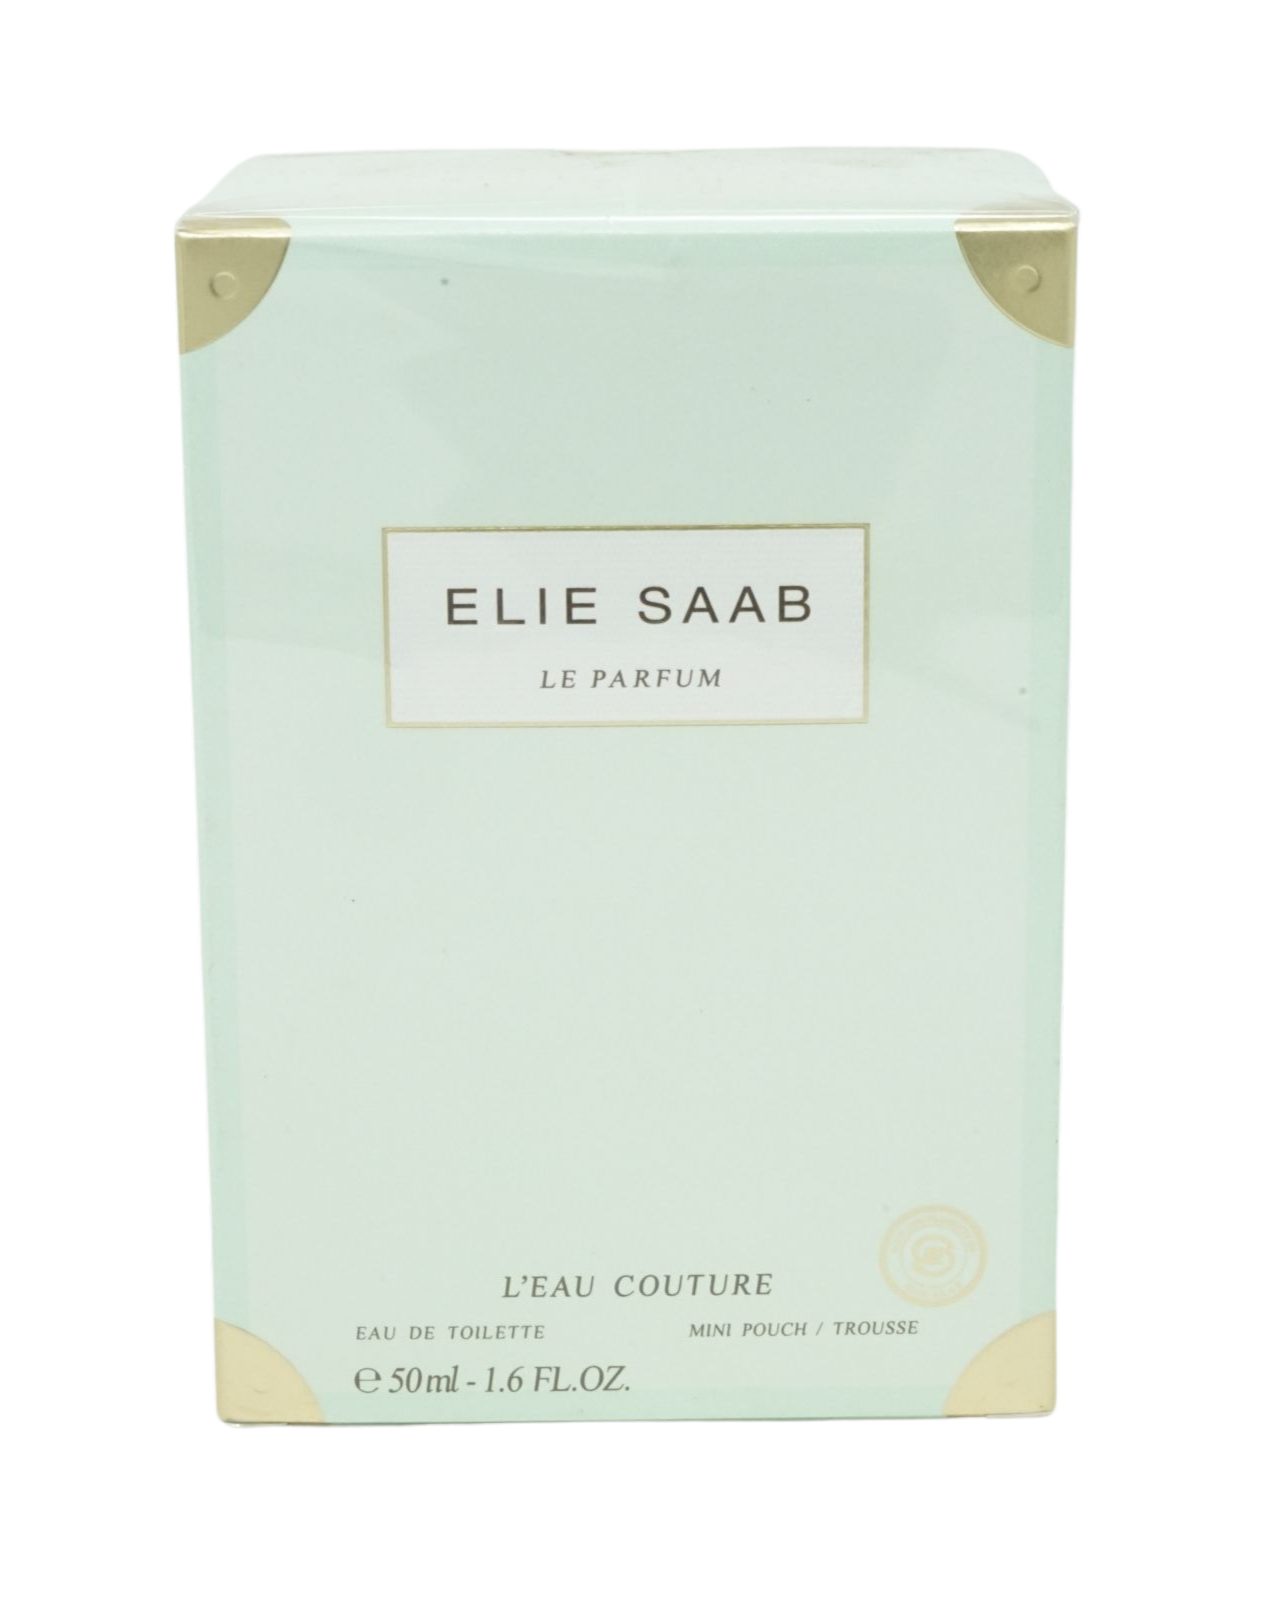 ELIE Elie Eau SAAB de + de Saab Toilette Eau 50ml Toilette Couture Mini Léau Beutel